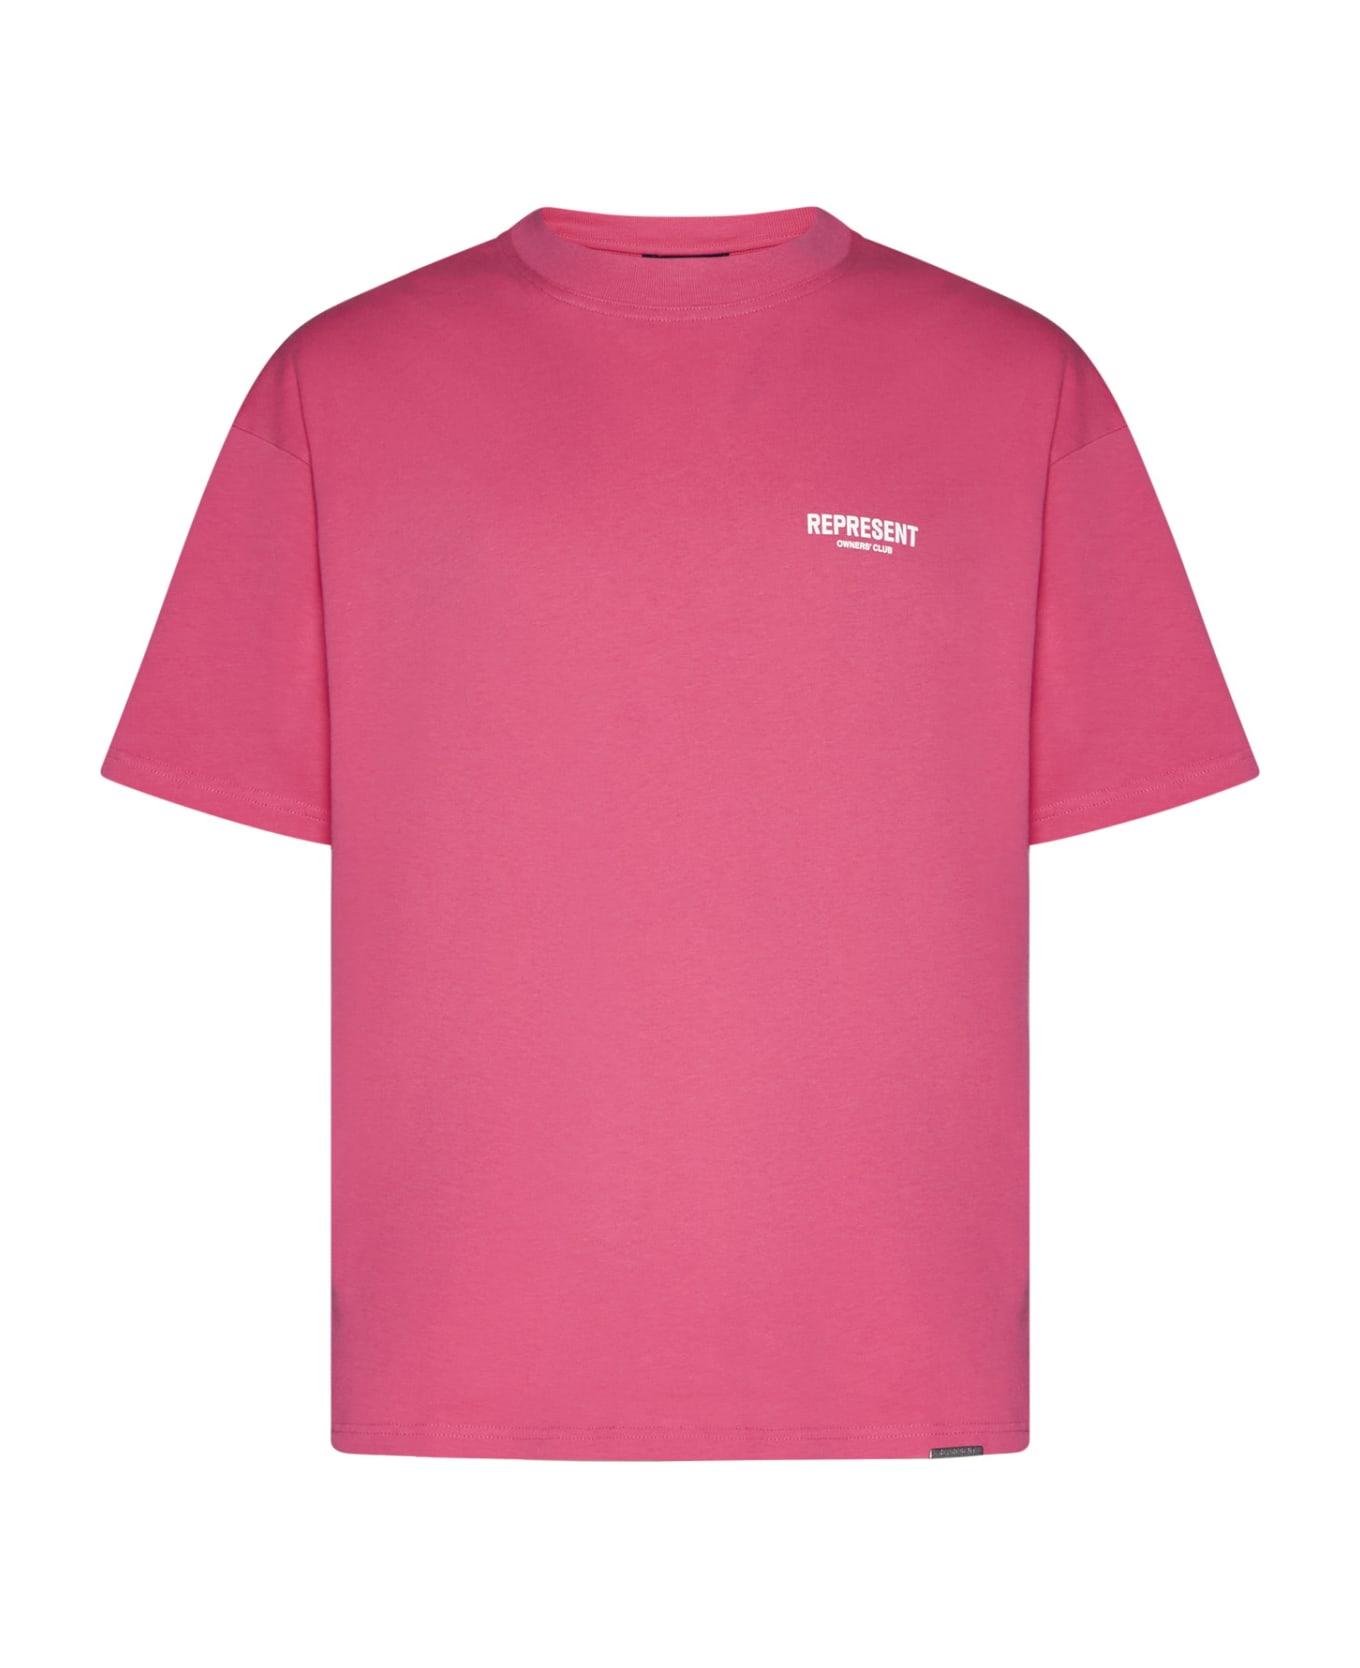 REPRESENT T-Shirt - Bubblegum pink